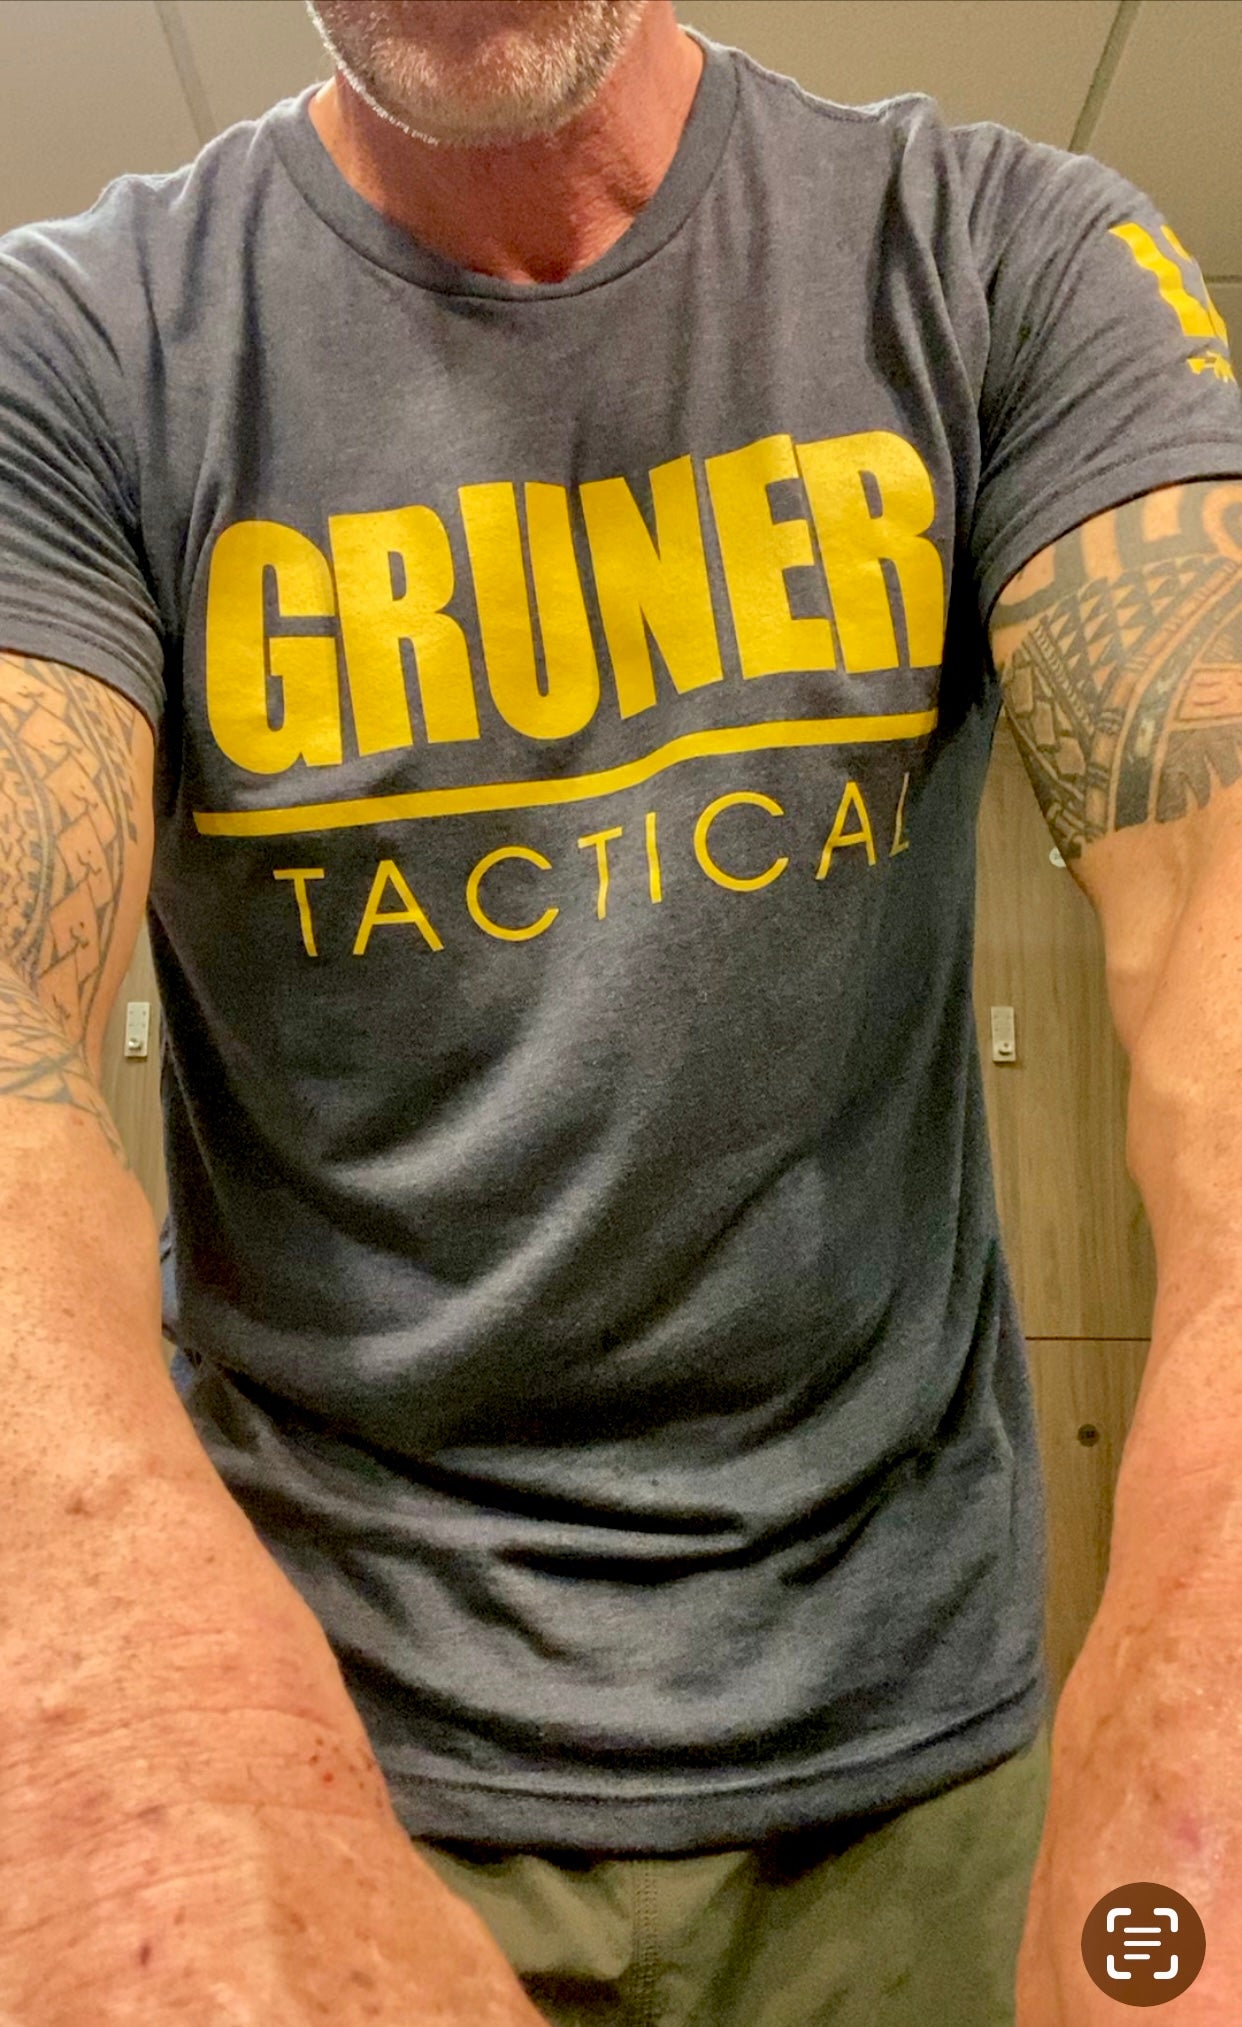 Large Gruner Tactical shirts